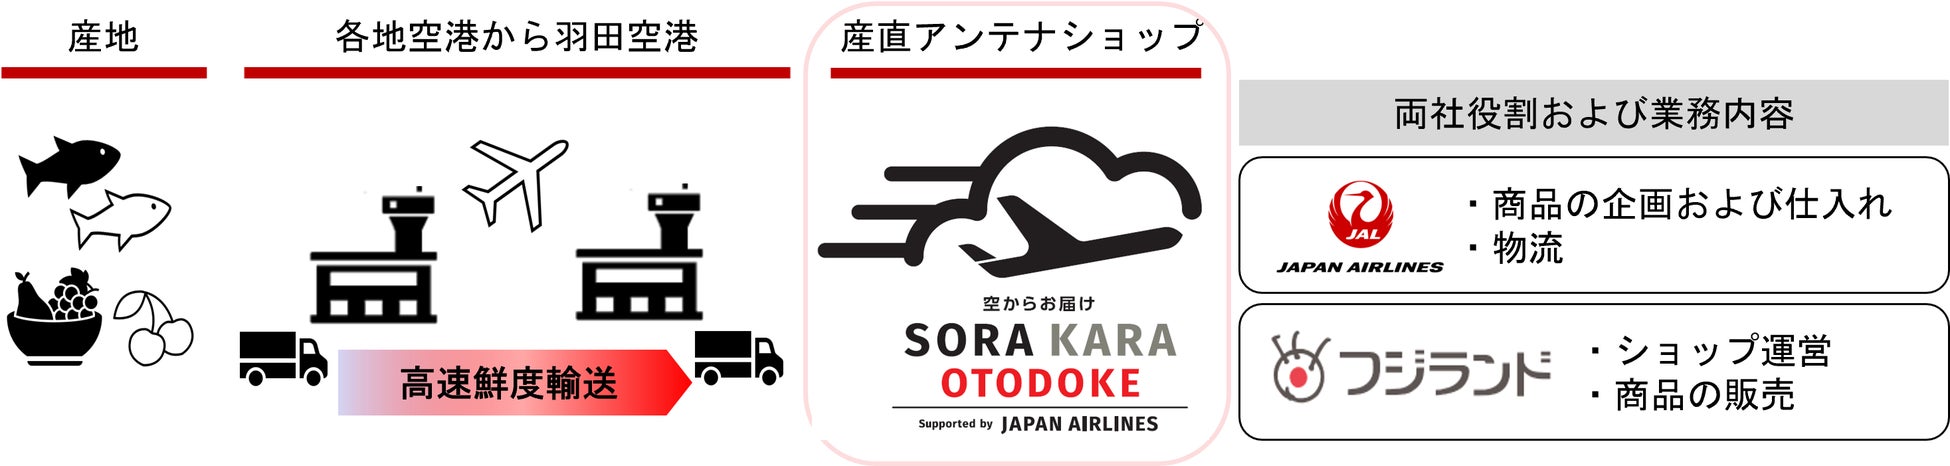 季節ごとの旬の味覚を全国から空輸でお届けする、産直アンテナショップ「SORAKARA OTODOKE」を1月25日より運営